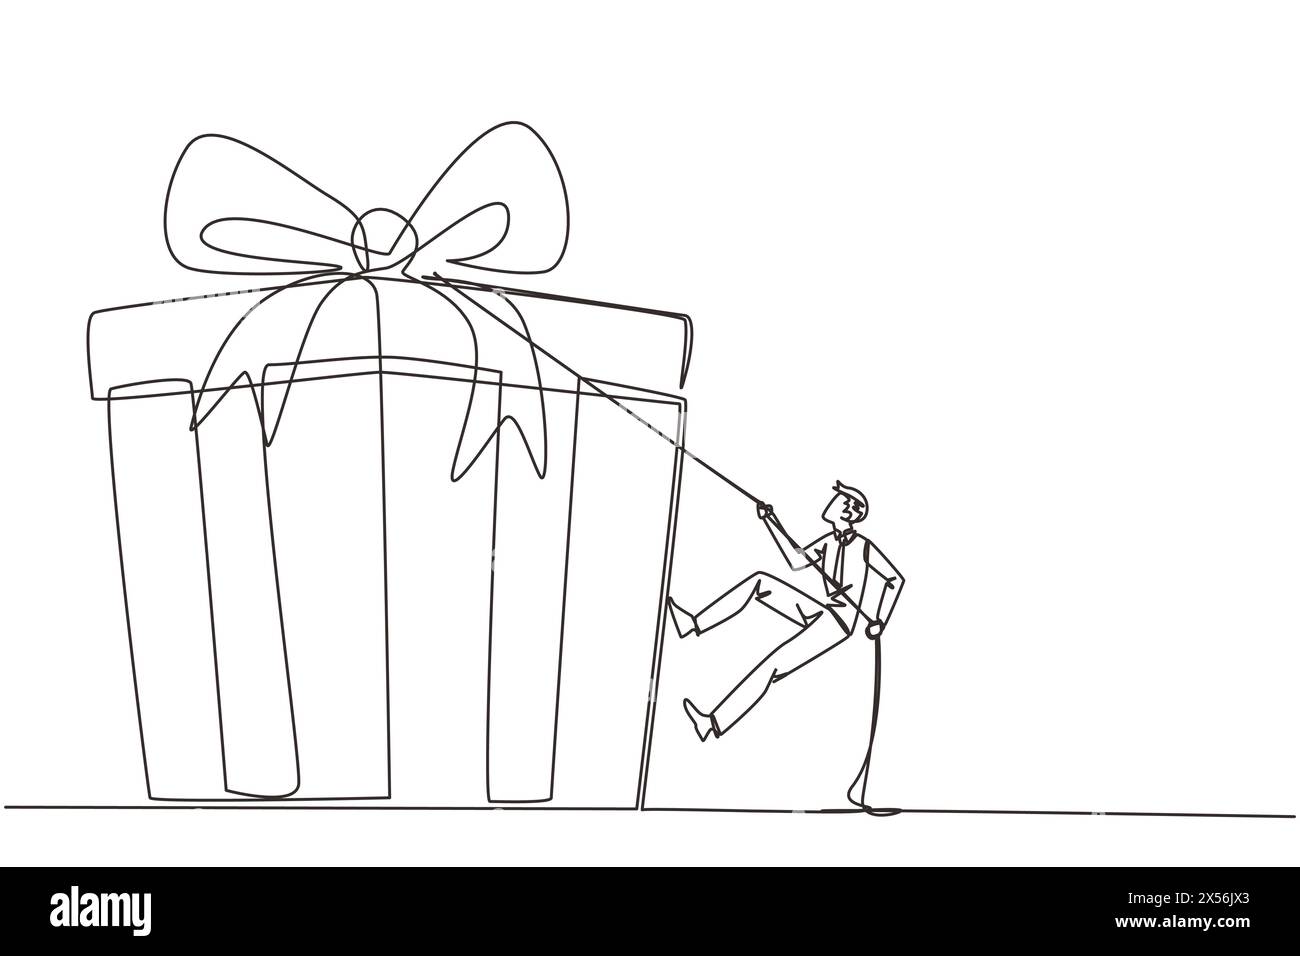 Einzelne durchgehende Linie Zeichnung Geschäftsmann Klettern Geschenkbox mit Seil. Kämpfen Sie beharrlich, um die gewünschte Belohnung zu erreichen. Harte Arbeit. Ehrliche Arbeit. Stock Vektor